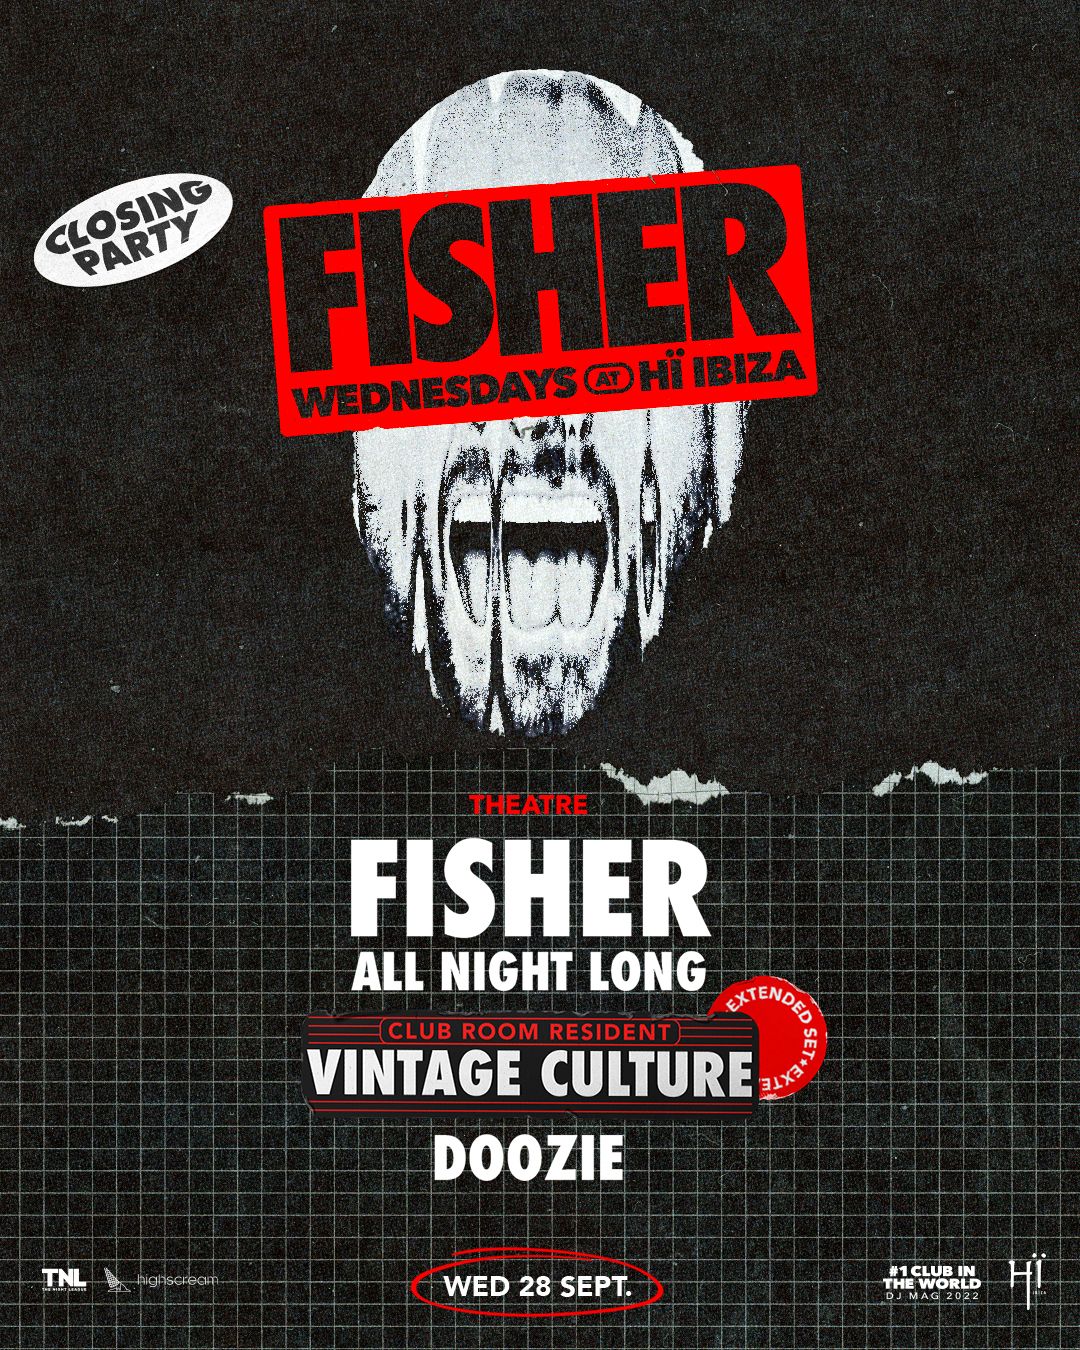 Fisher, Ibiza 2023, DJ Info, Schedule & Tickets